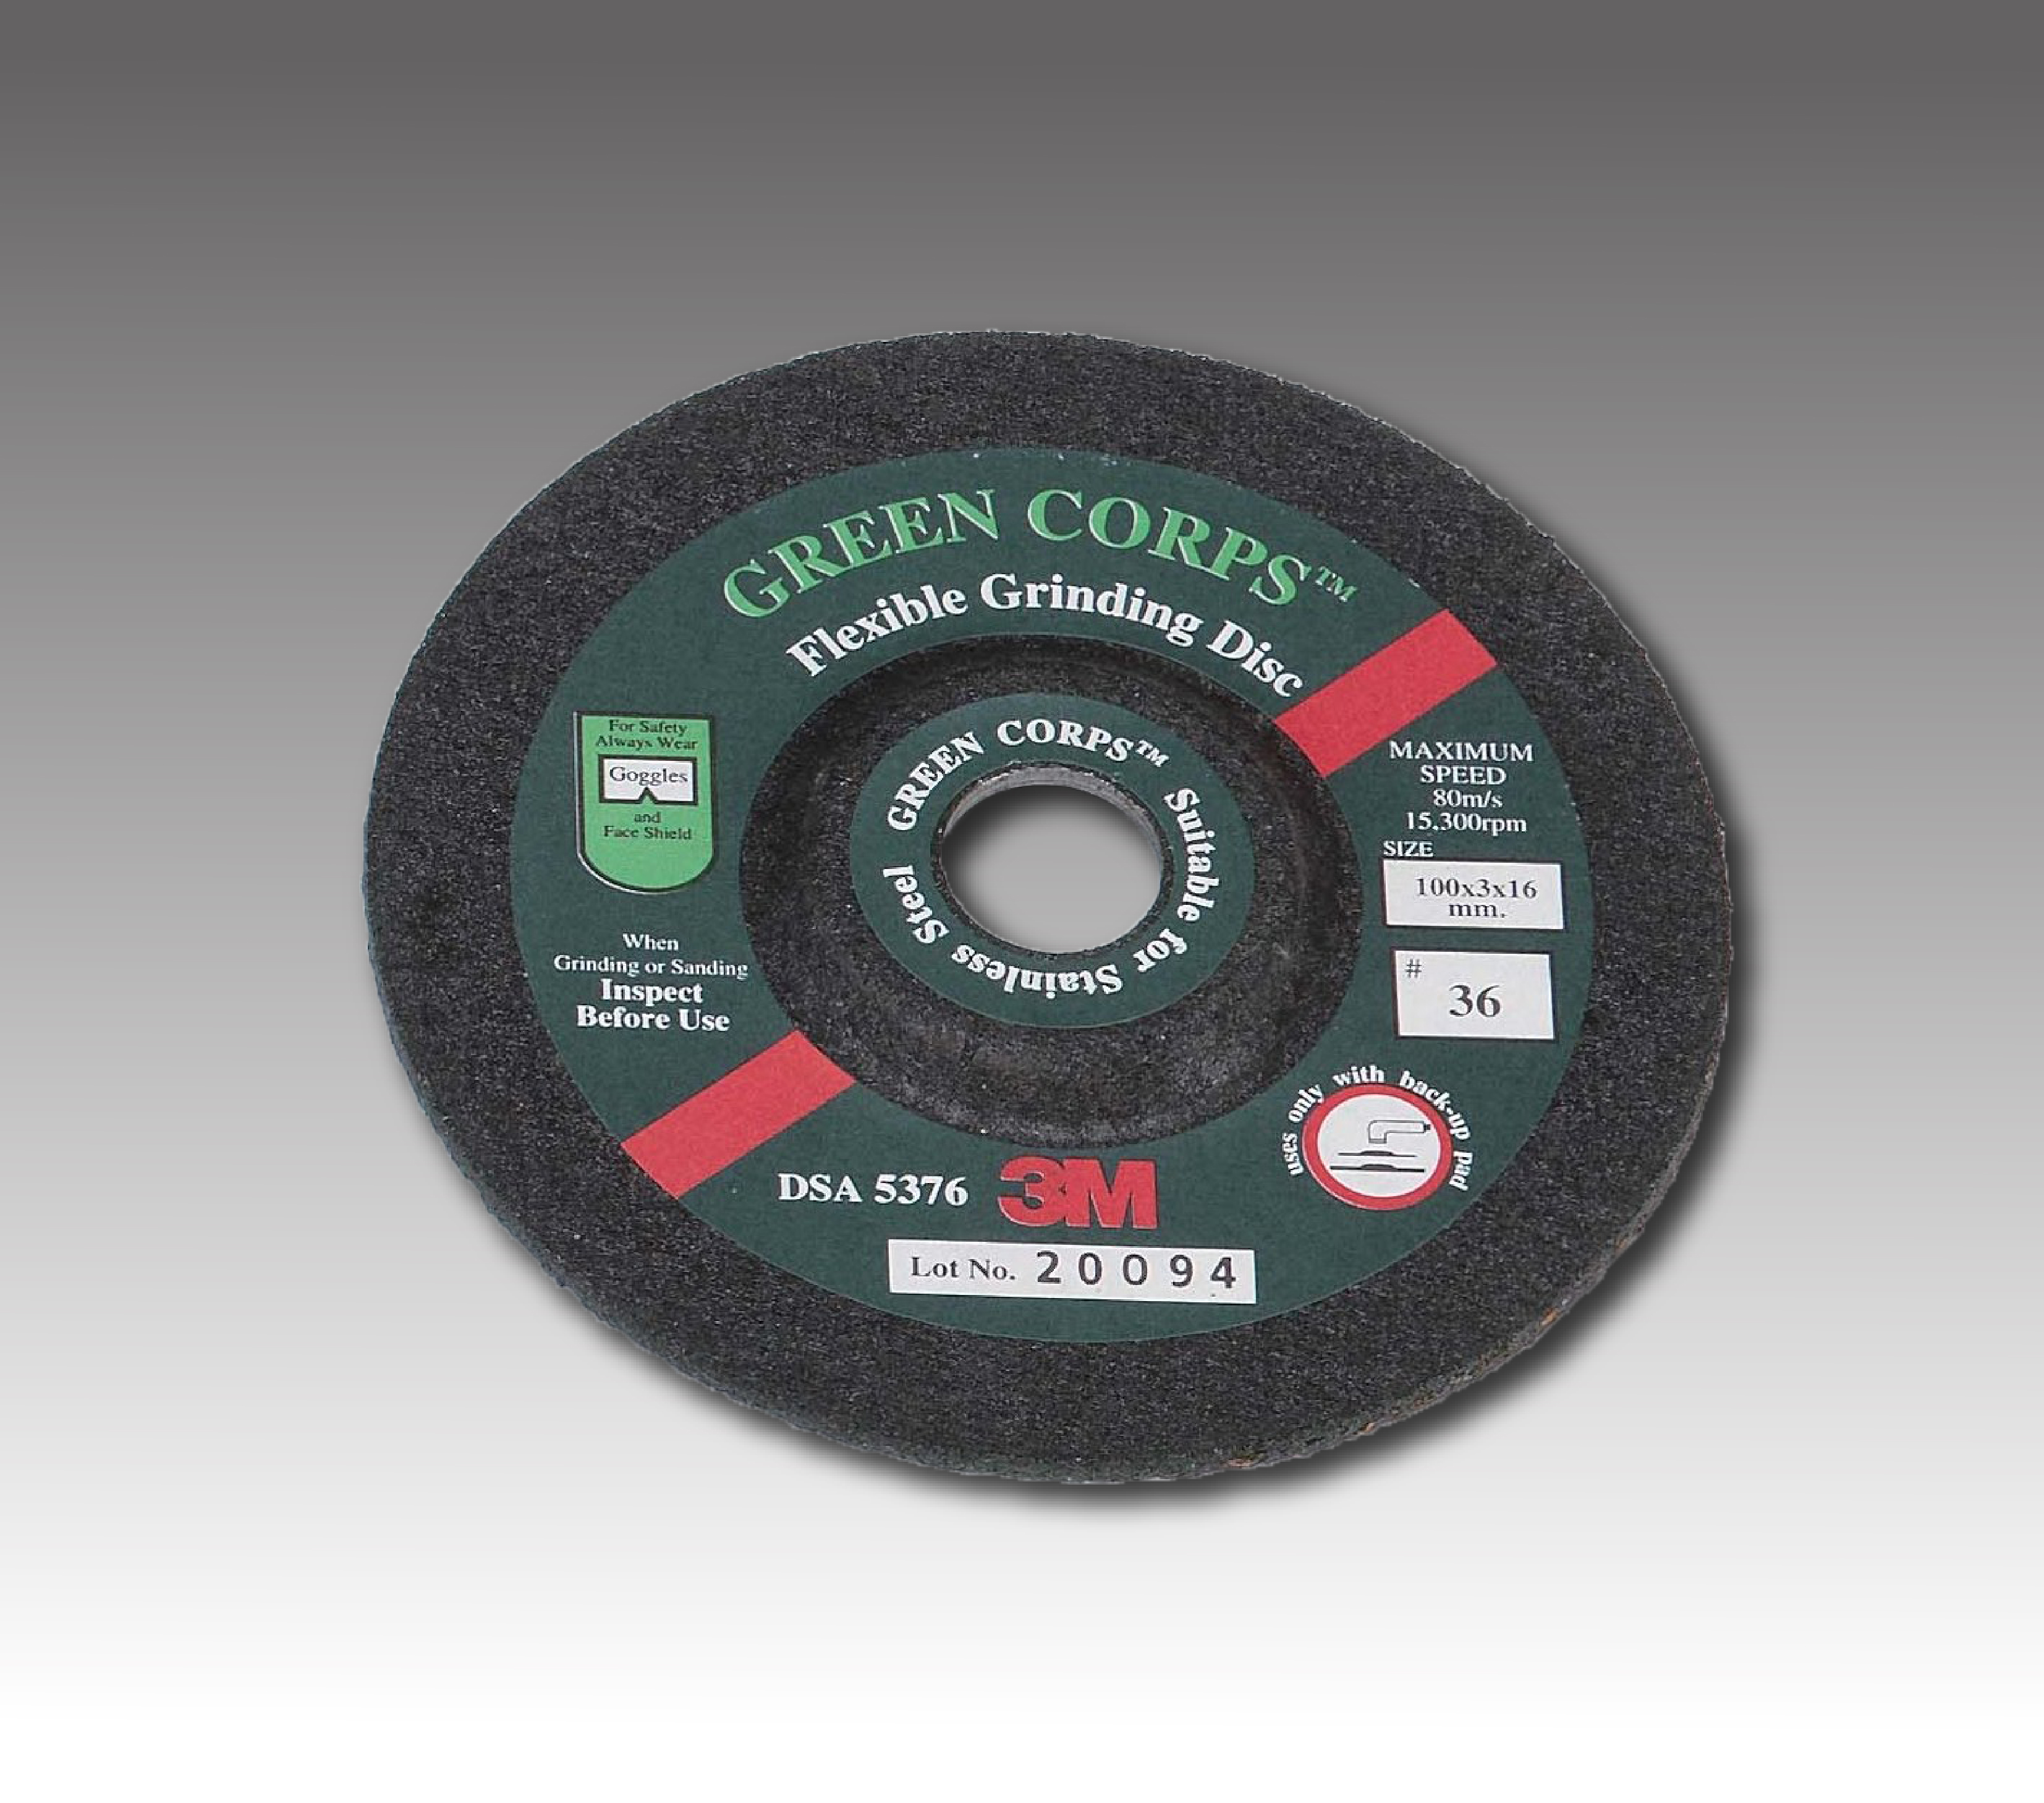 3M Flexible Grinding Disc - 3M Flexible Grinding Disc